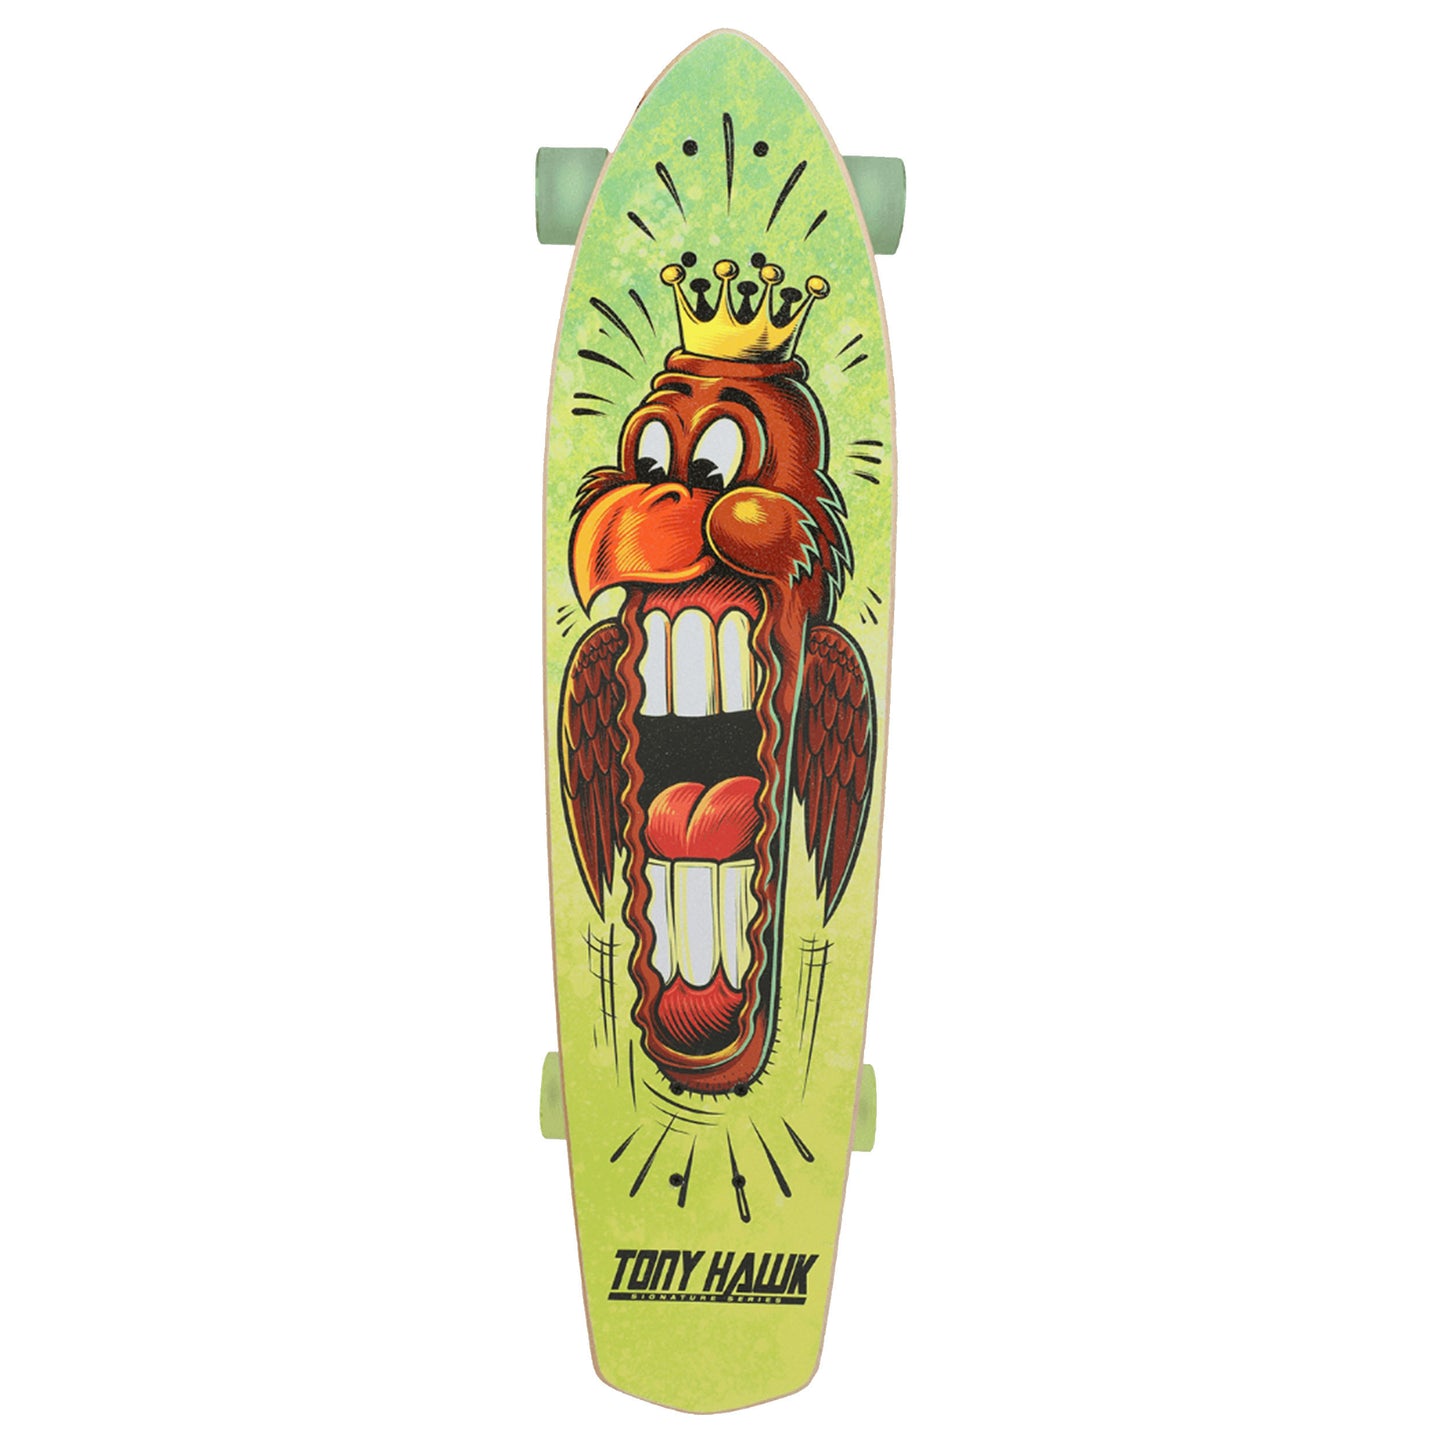 Tony Hawk 34 Inch Big Hawk Mouth Cruiser Skateboard